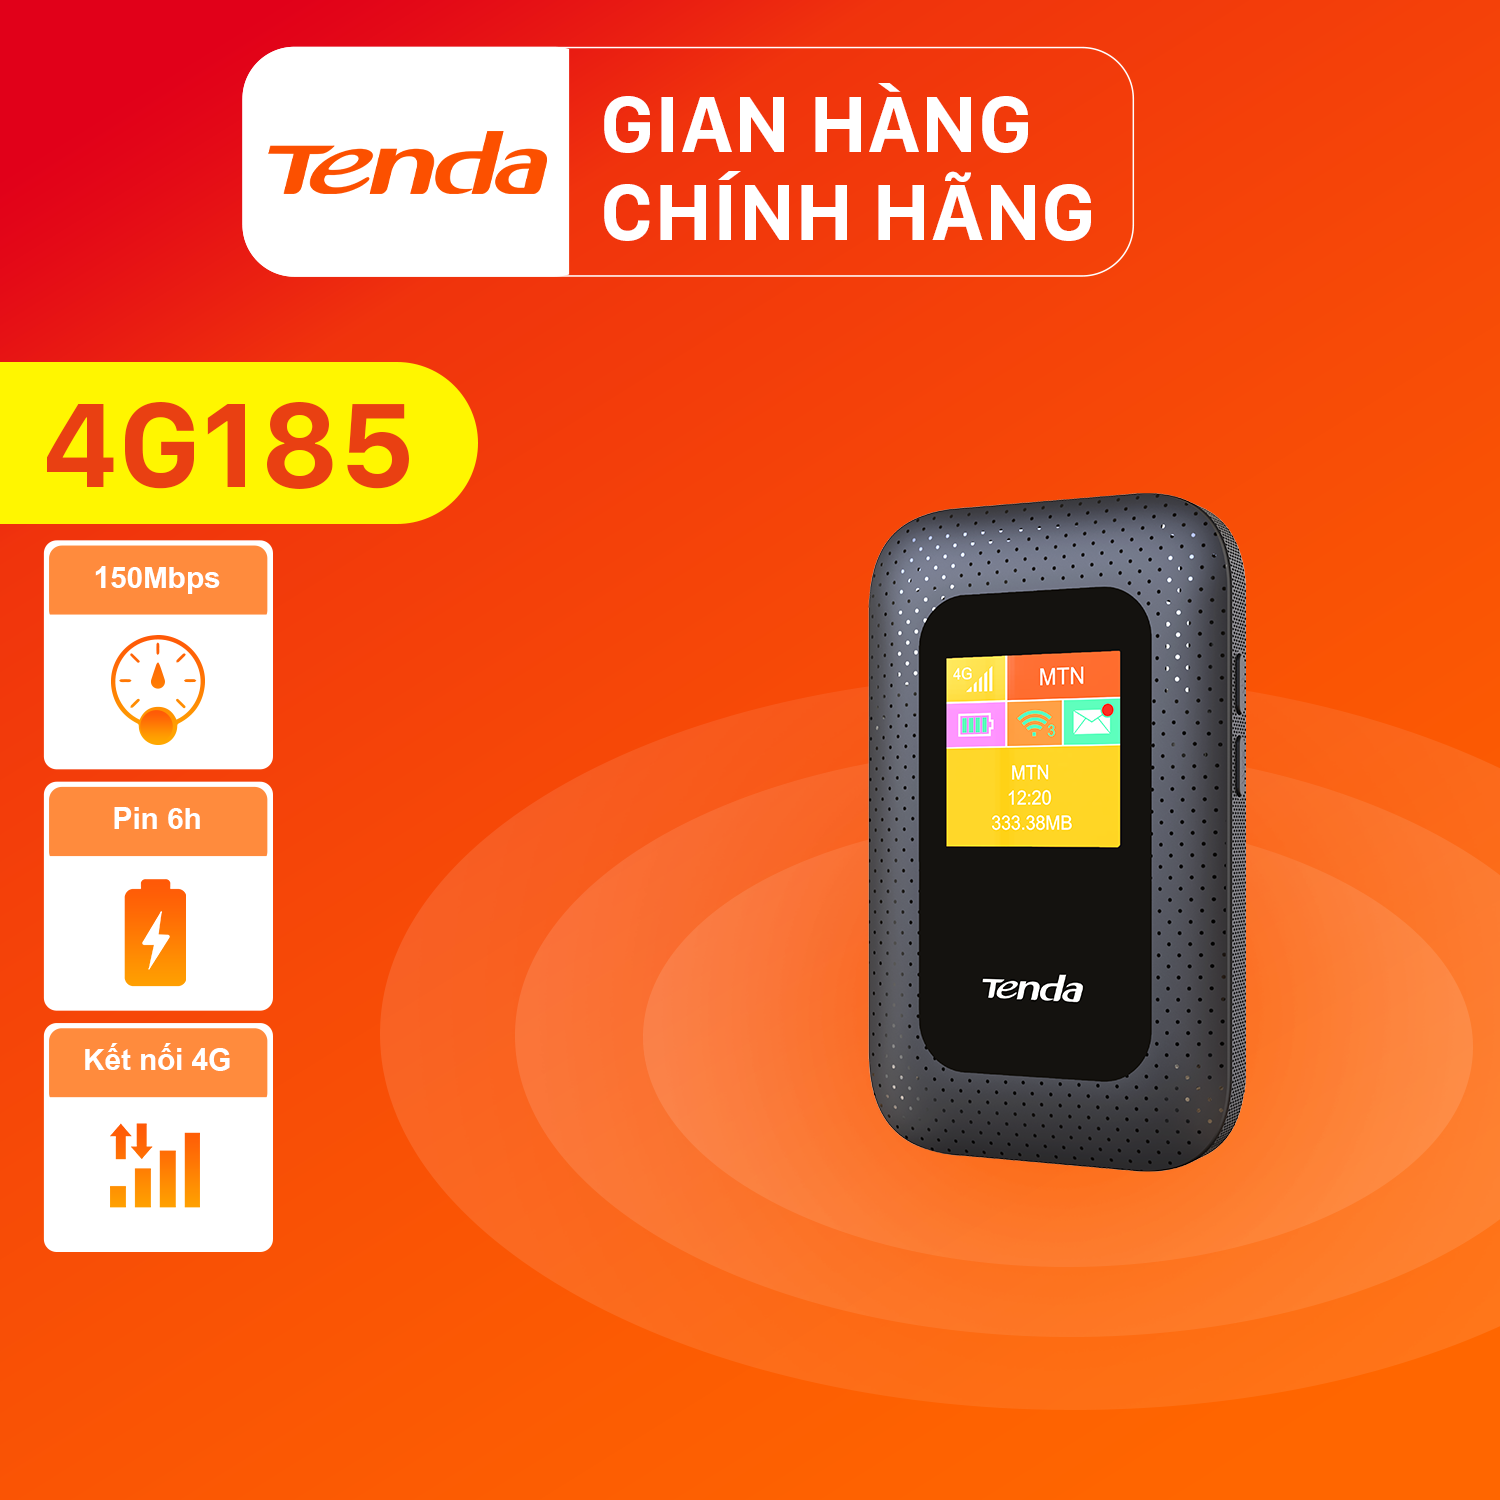 [Hàng mới về]Bộ phát Wifi di động Tenda 4G LTE 4G185 – Hãng phân phối chính thức